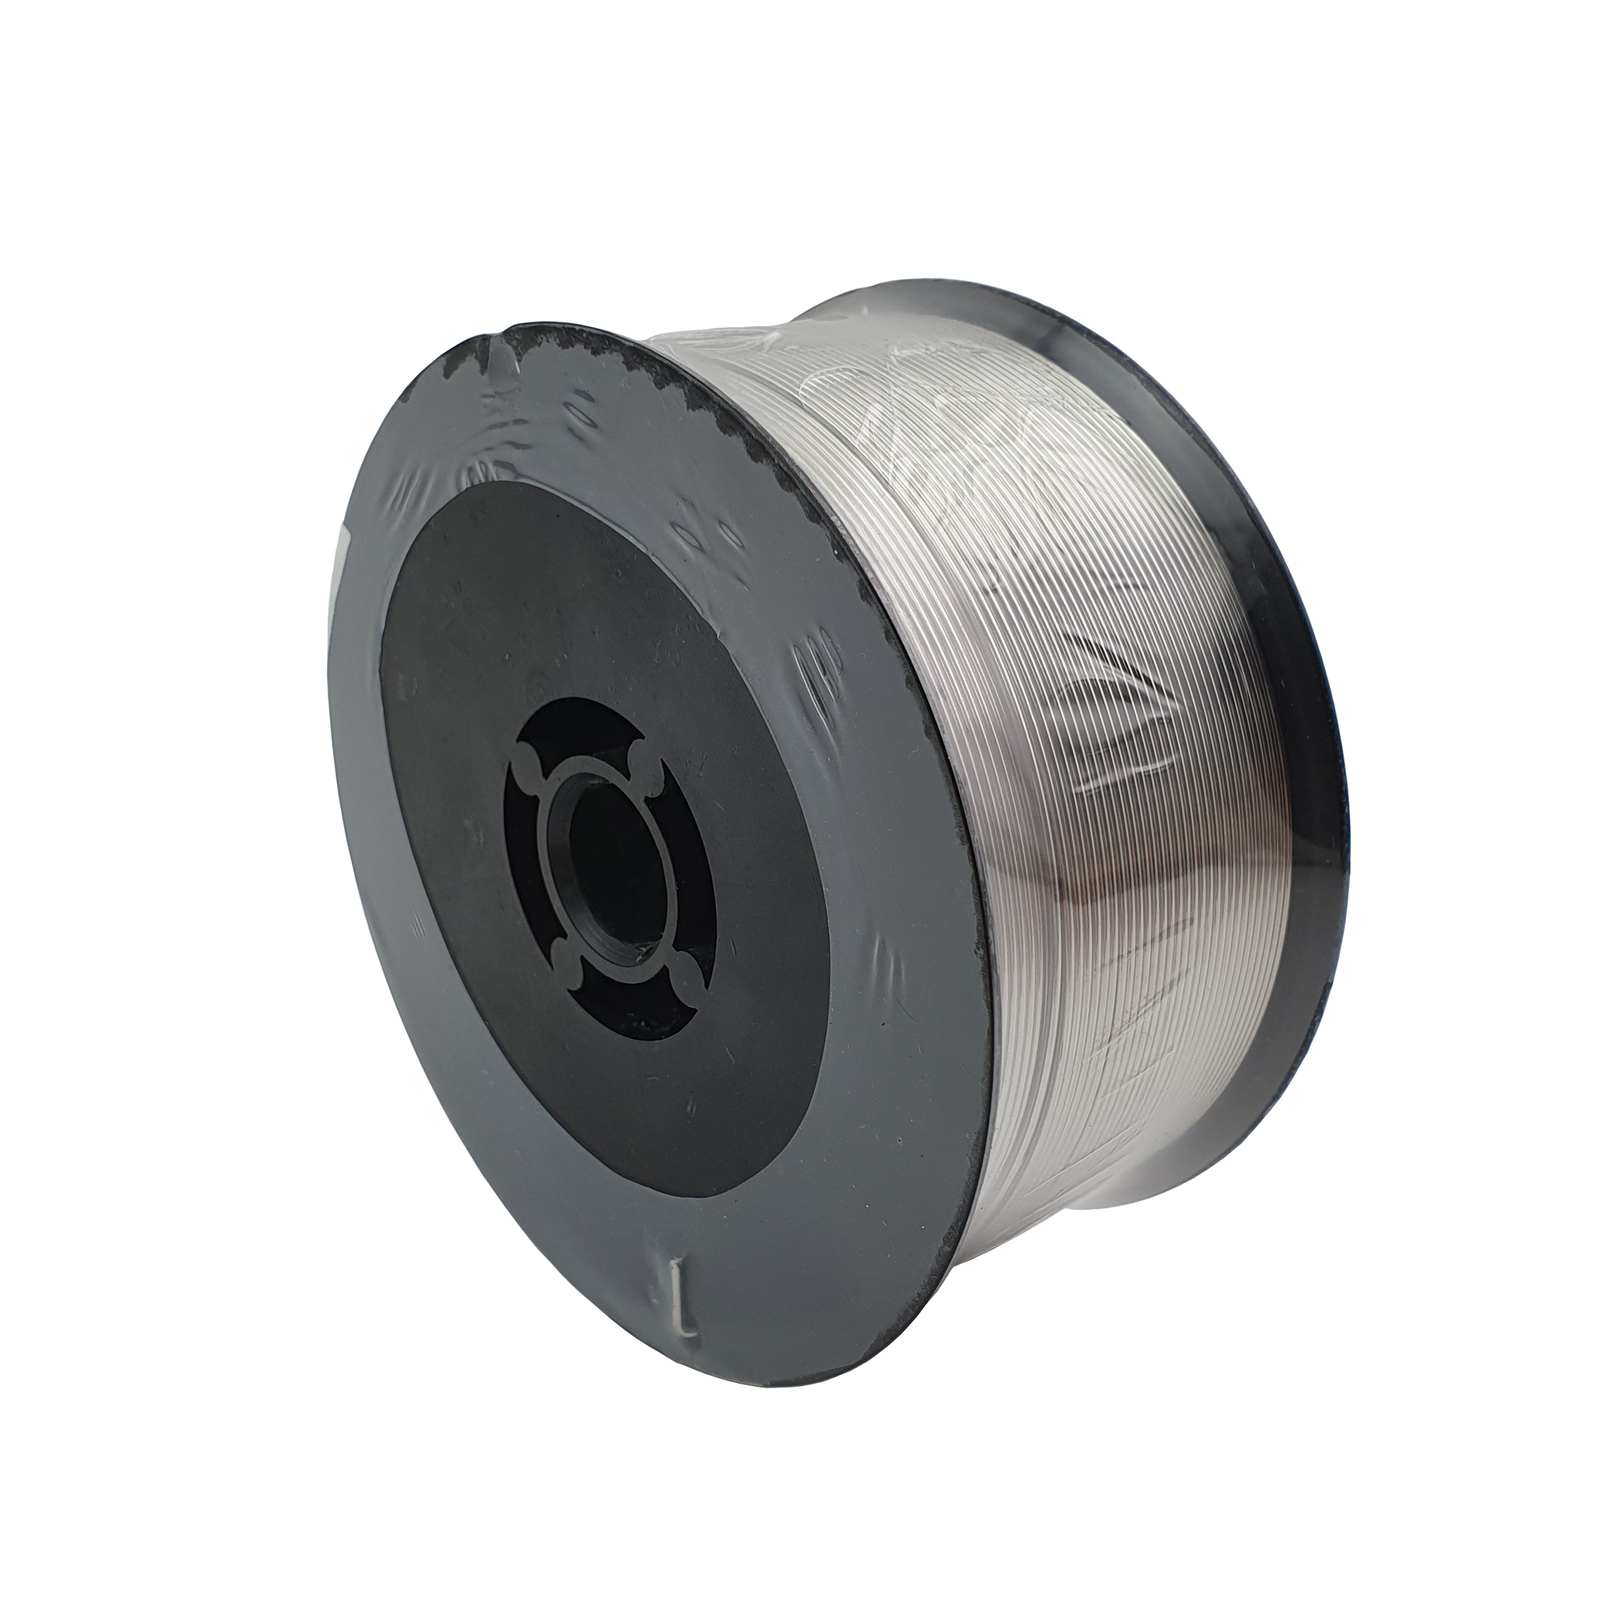 Aluminium MIG Welding Wire - ER4043 - 1.2mm x  0.5kg Spool